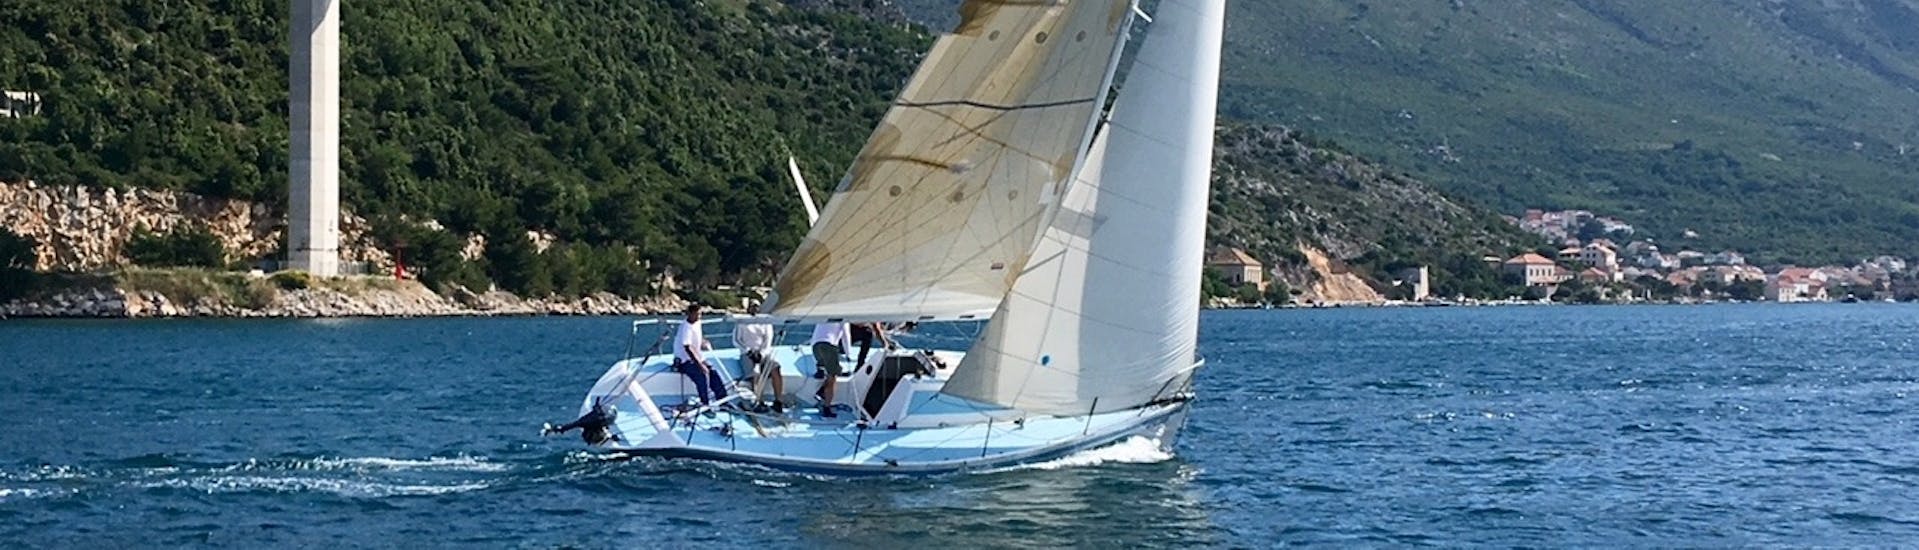 Notre bateau dans l'eau lors d'une excursion en bateau à voile autour des îles Elaphiti avec The Day Sail Croatia.